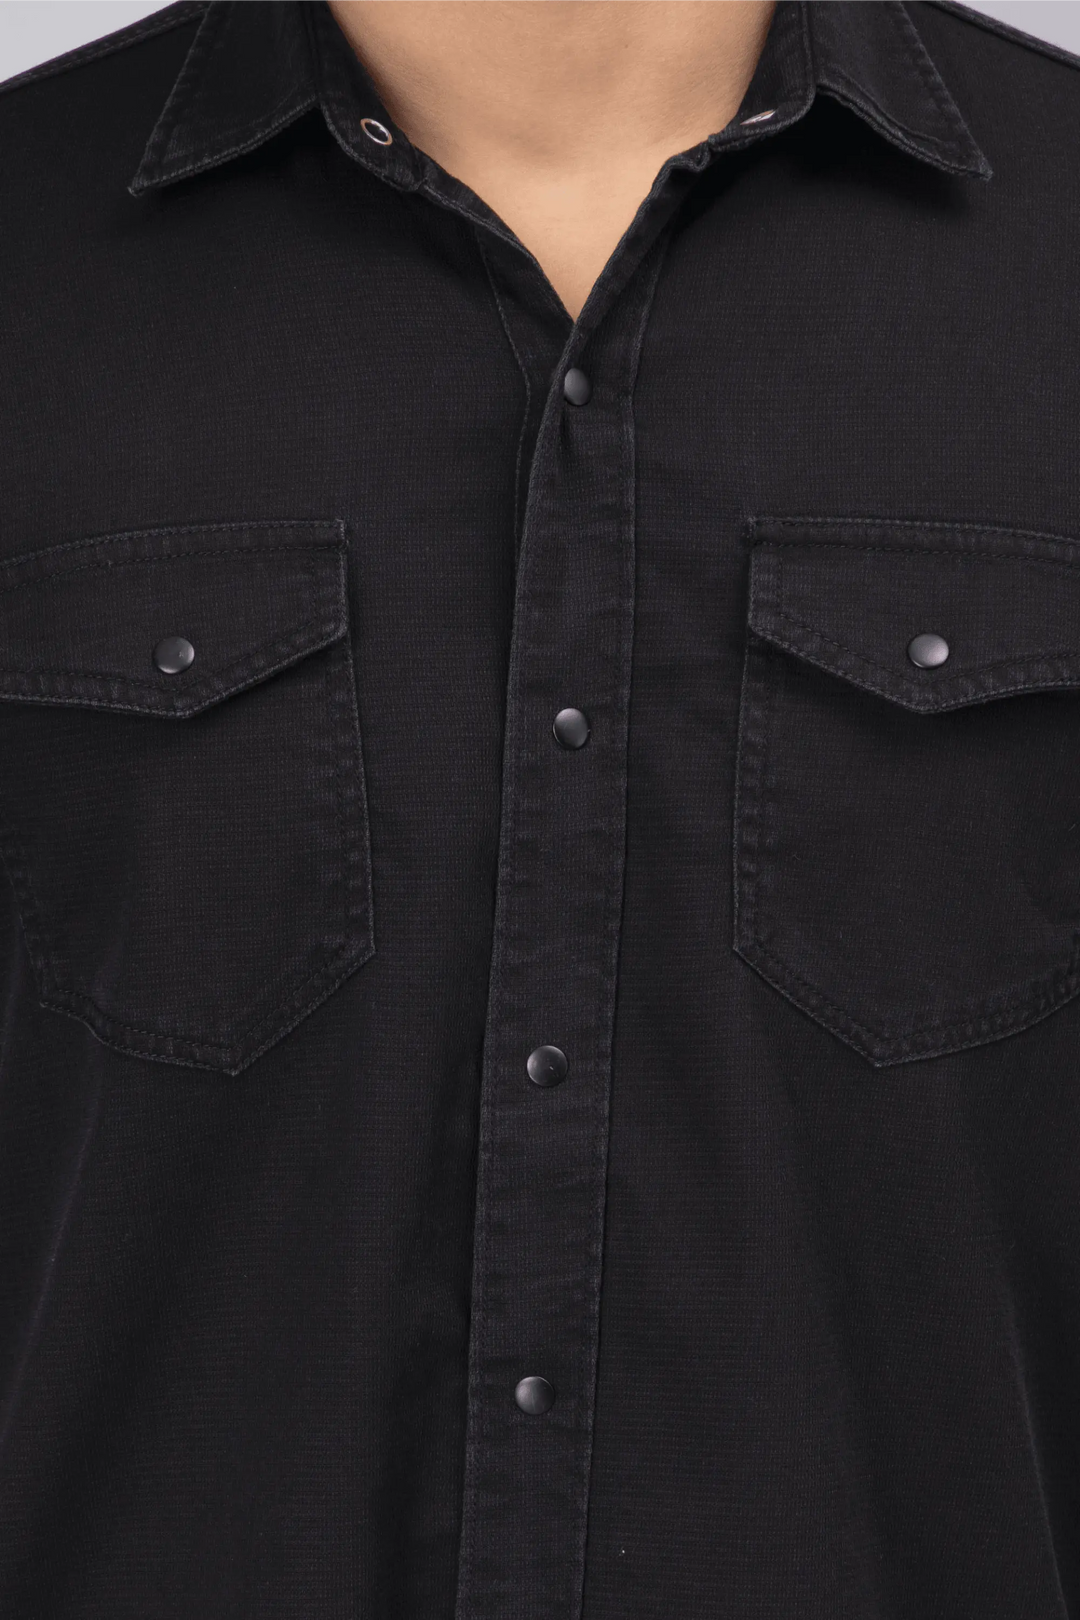 Regular Fit Black Solid Denim Shirt For Men